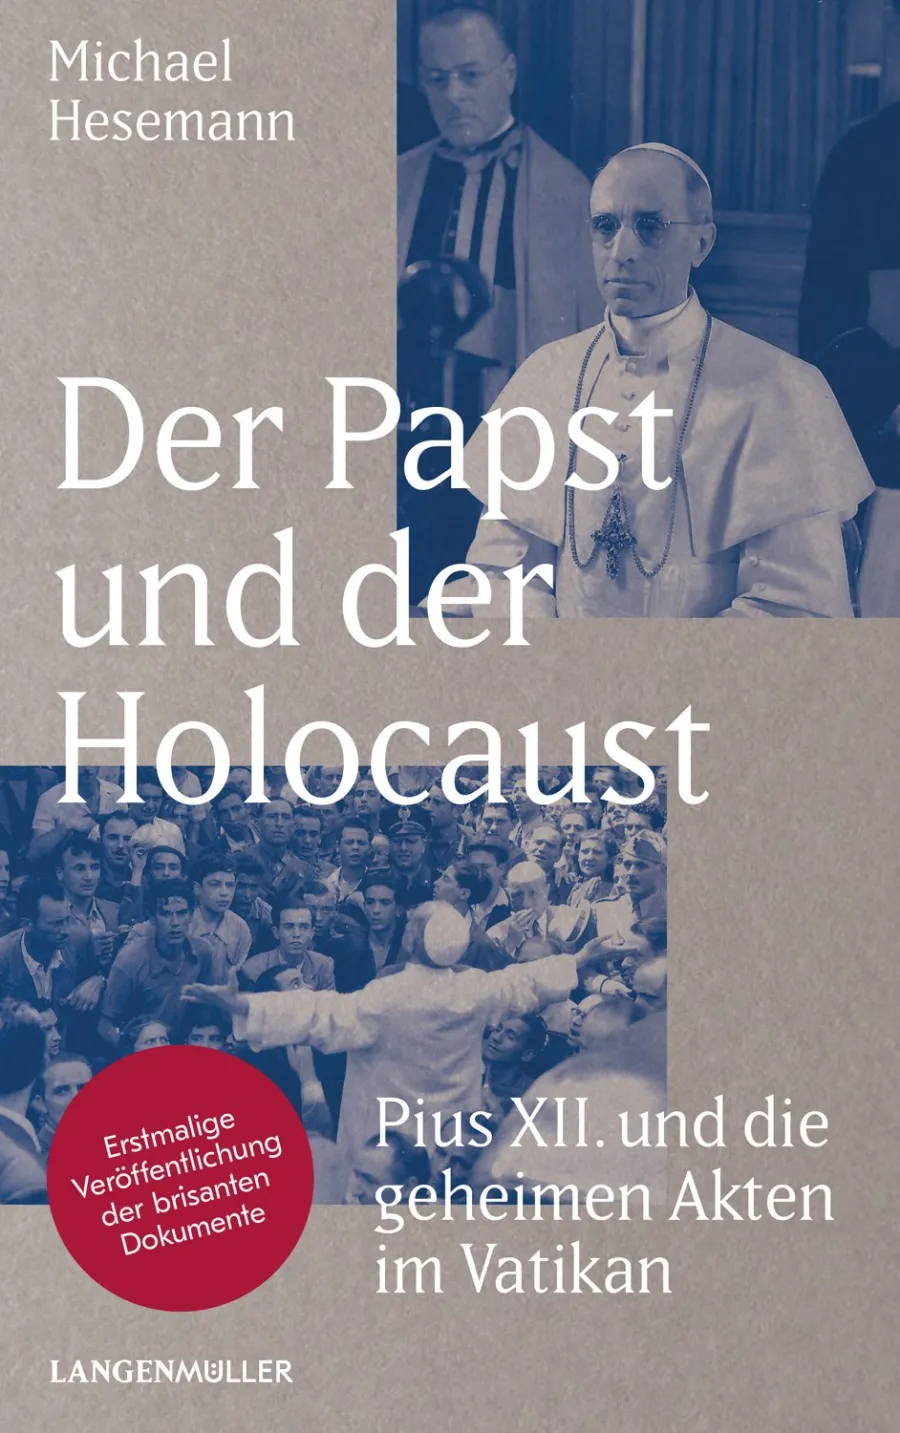 Michael Hesemann, "Der Papst und der Holocaust: Pius XII und die geheimen Akten im Vatikan" ist bei Langenmüller erschienen und hat 448 Seiten.